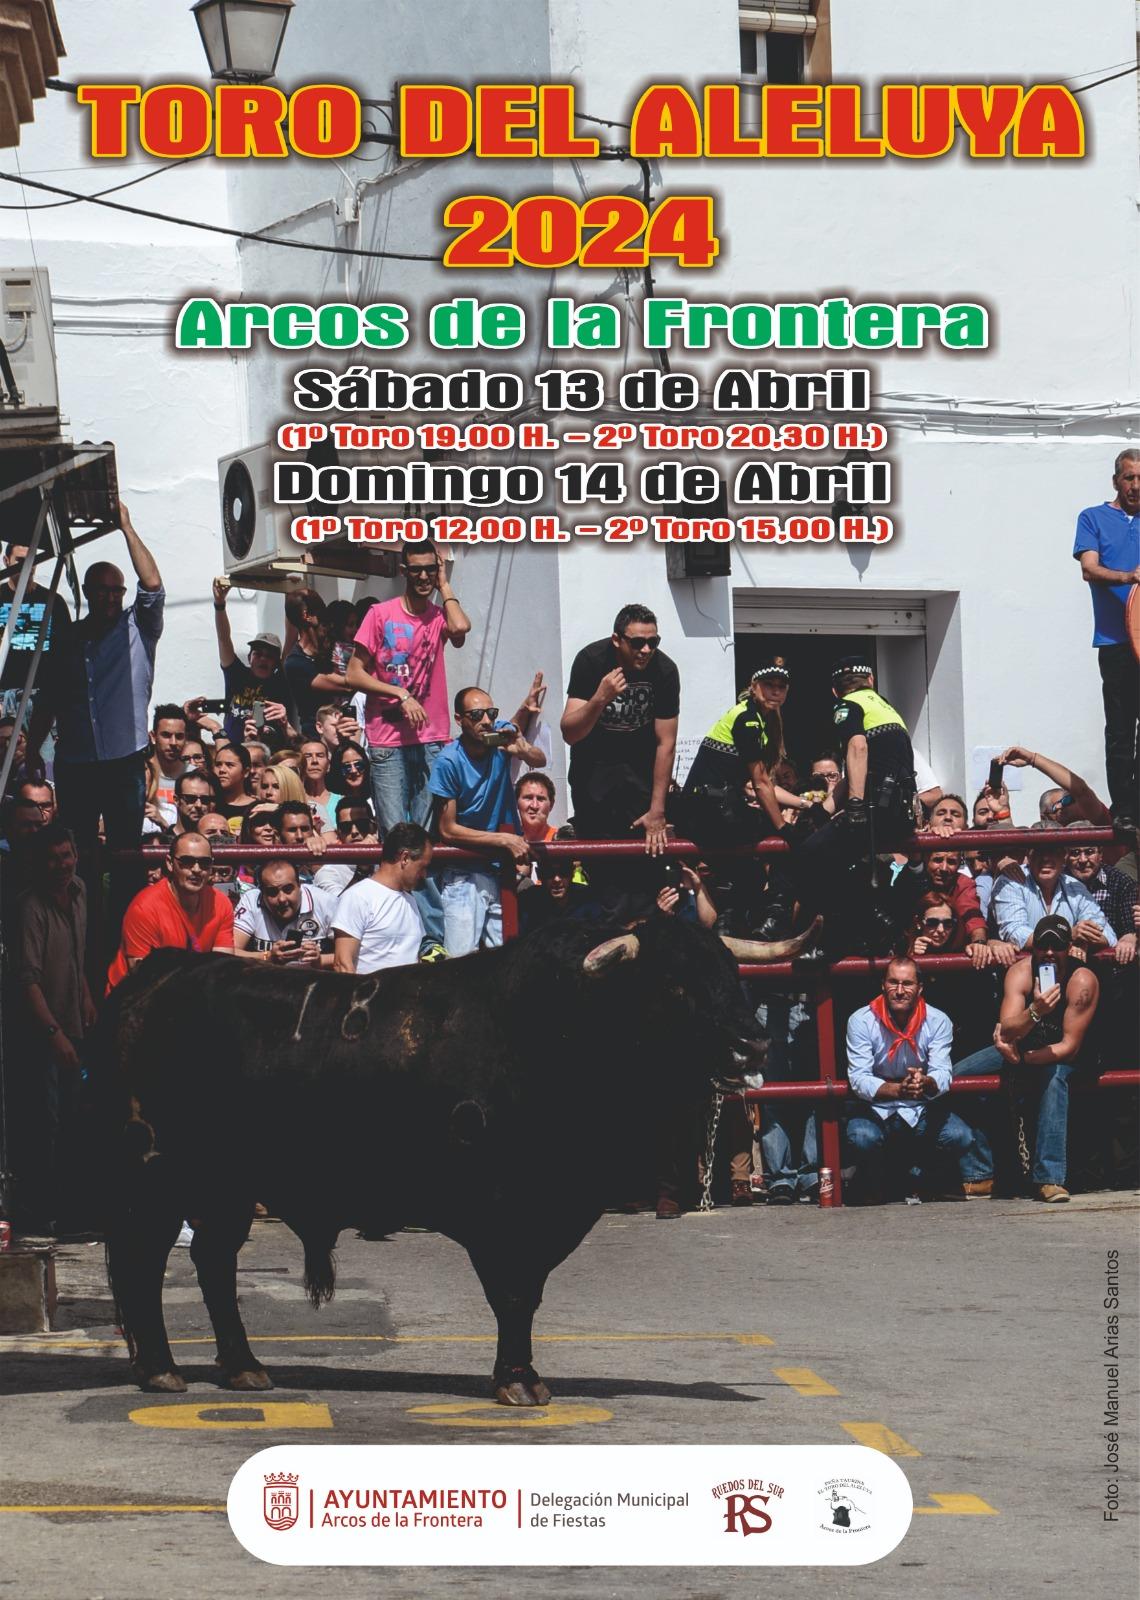 Los días 13 y 14 de abril se celebra el Toro del Aleluya en Arcos de la Frontera